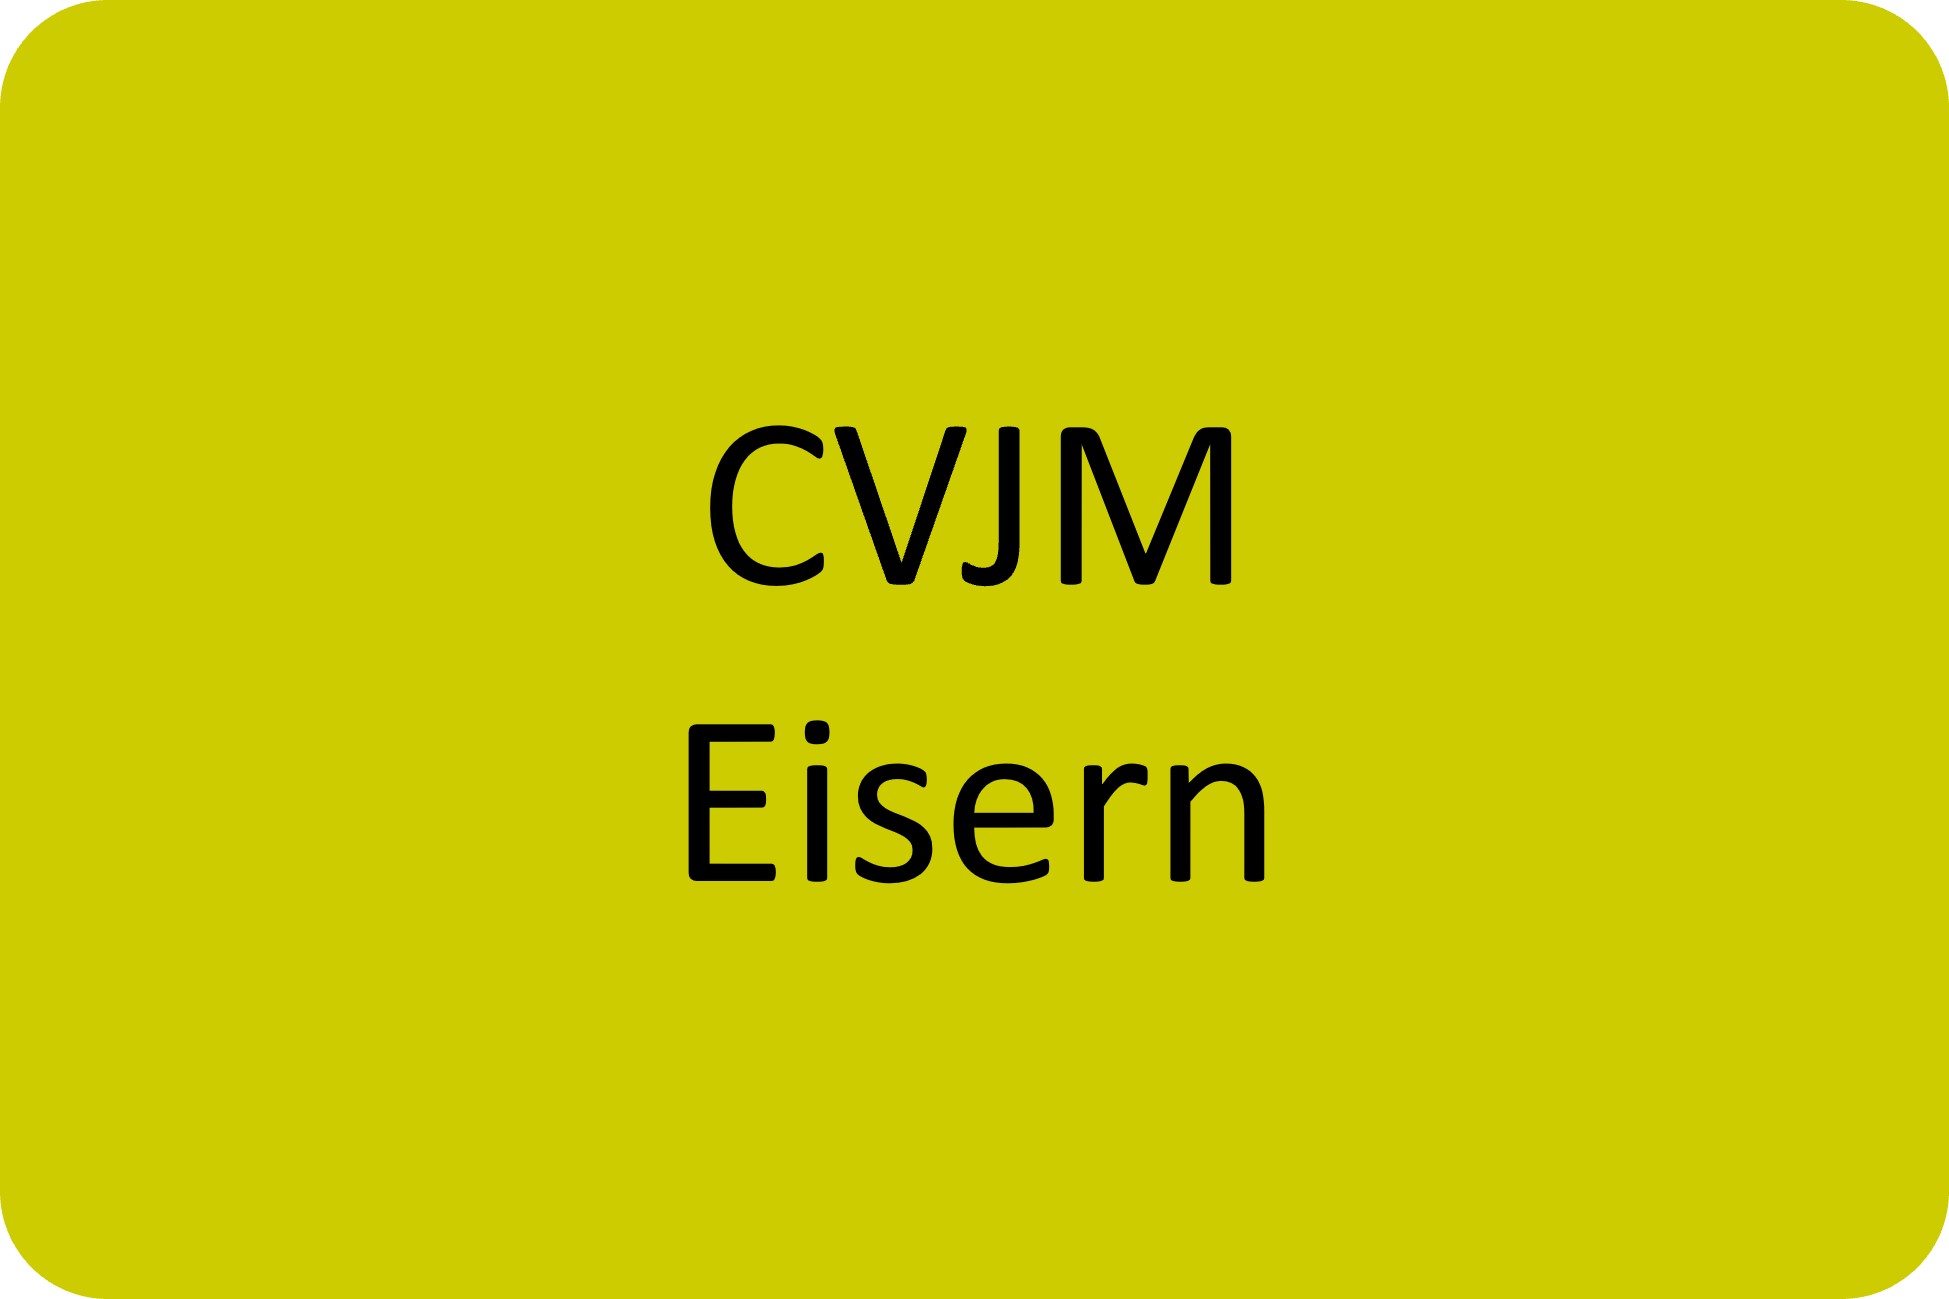 CVJM Eisern